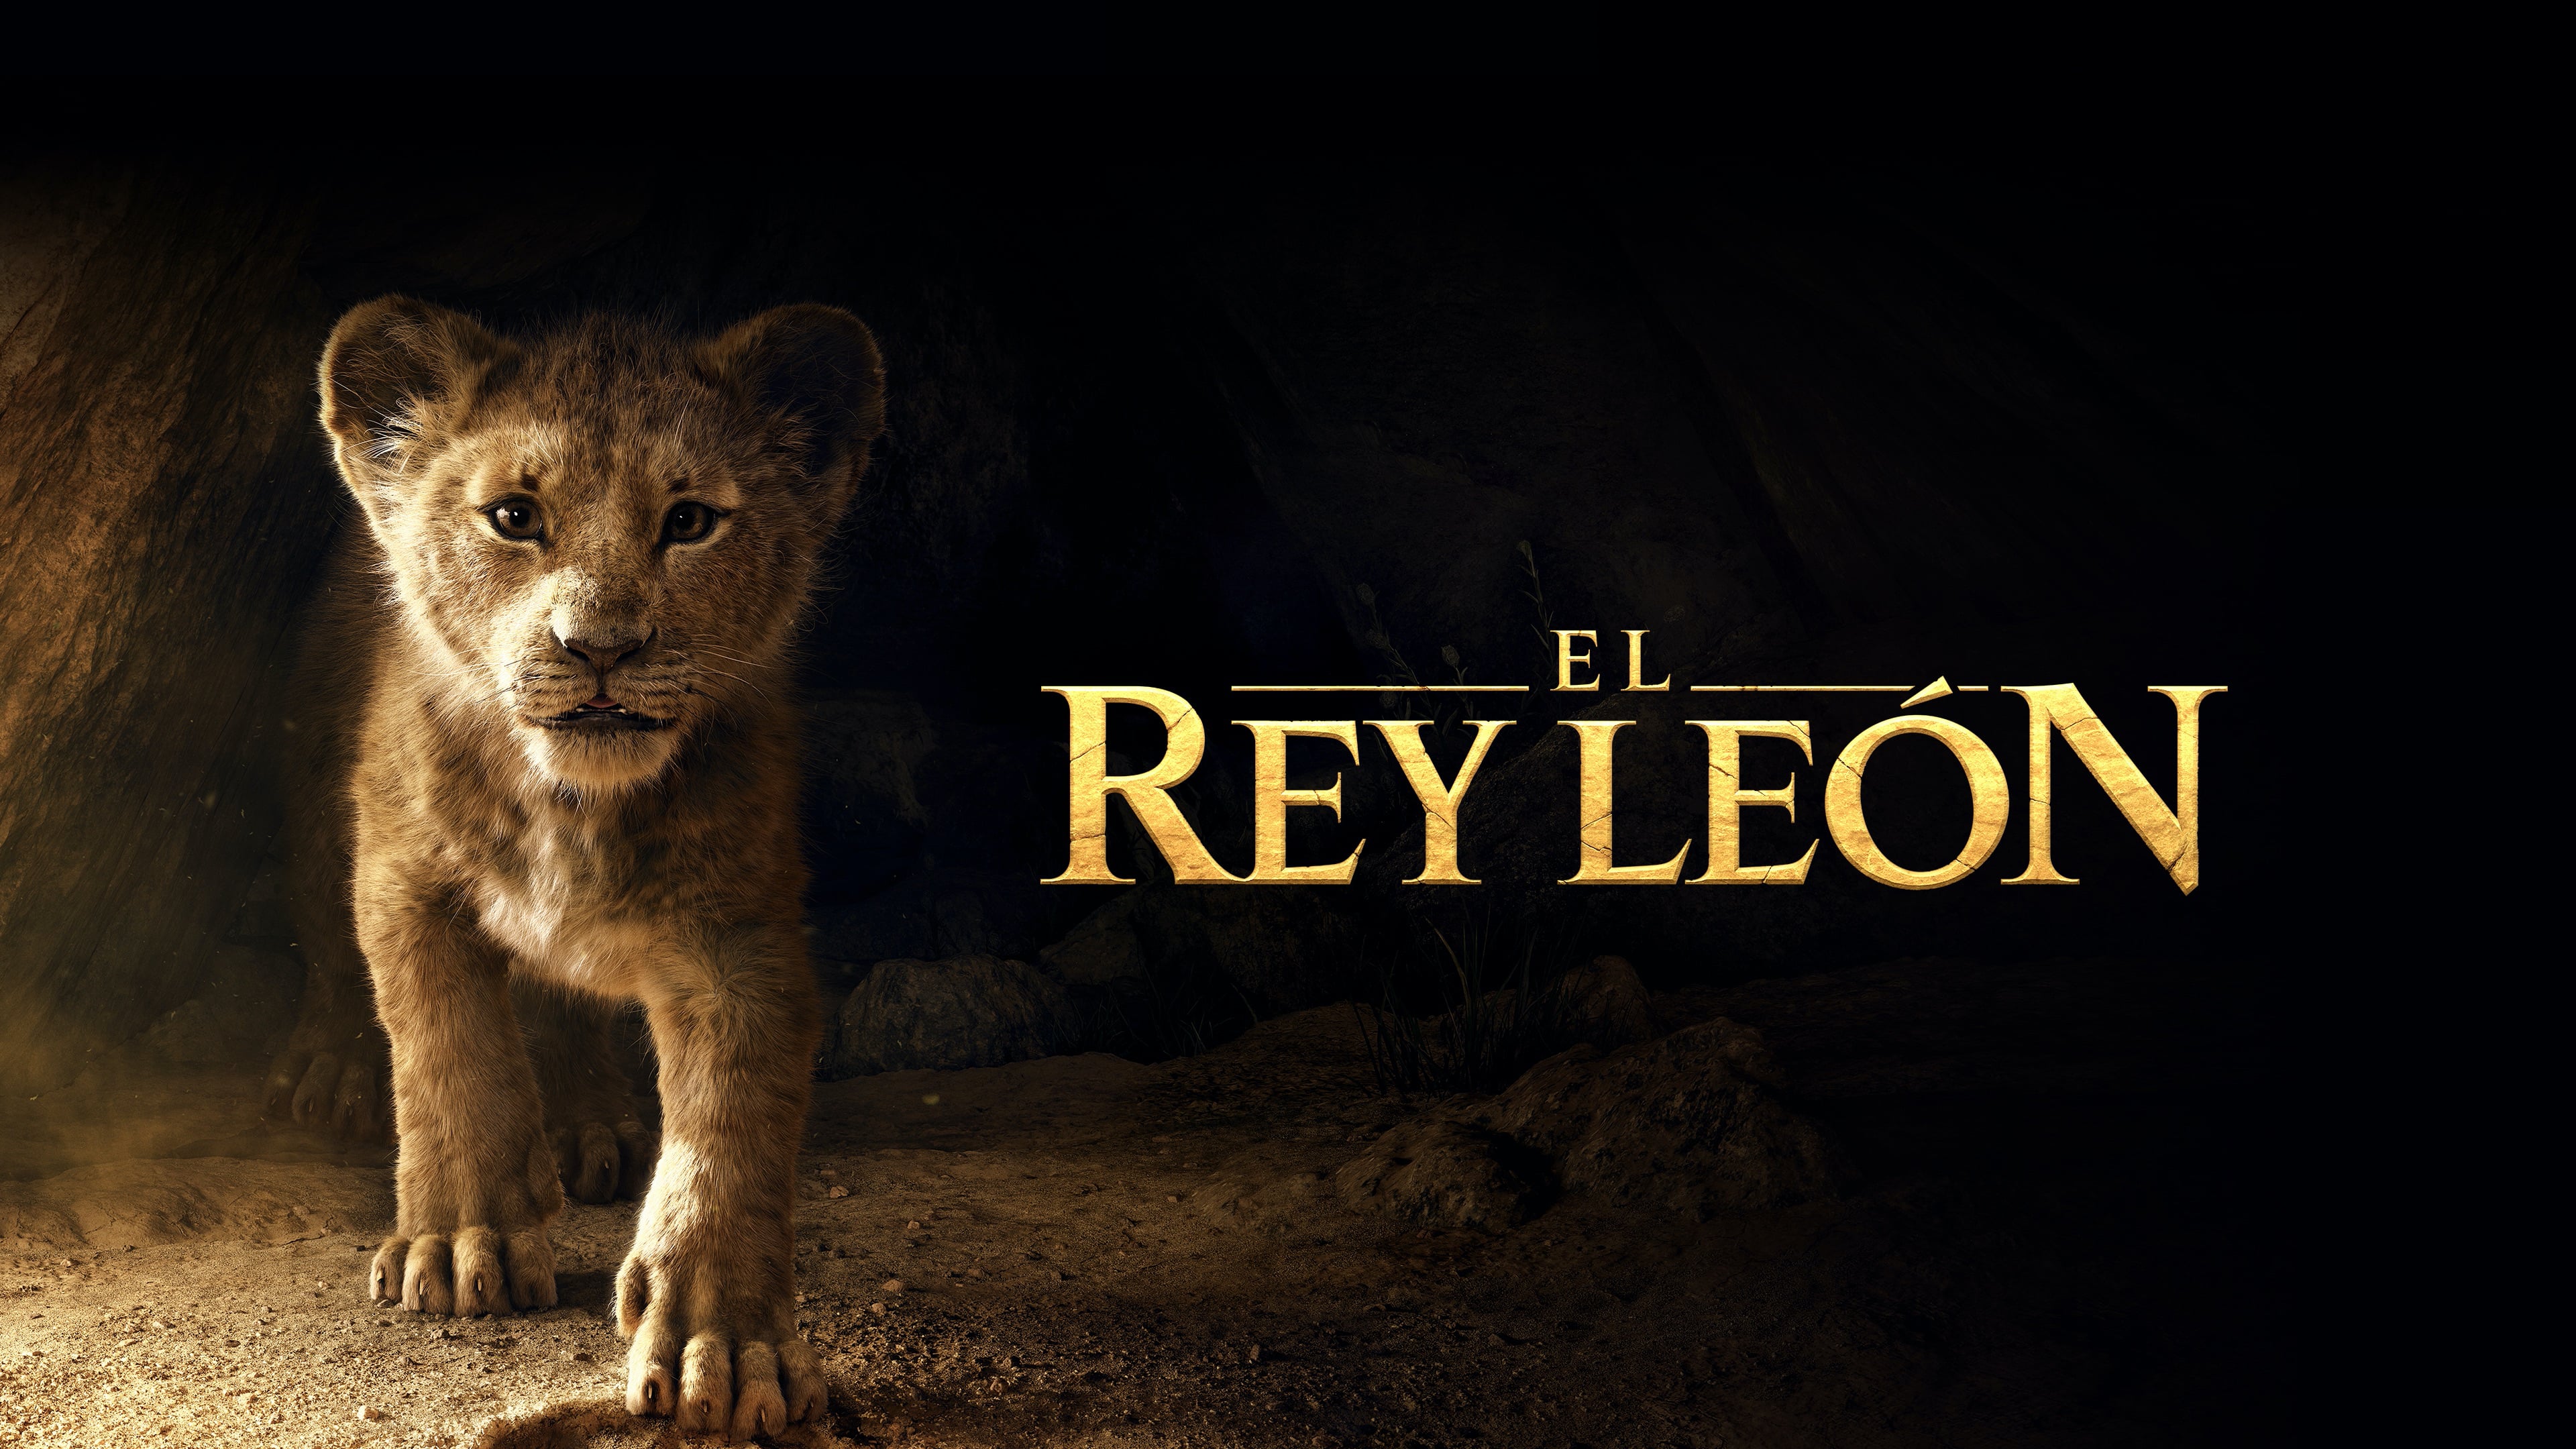 El rey león (The Lion King) (2019) .